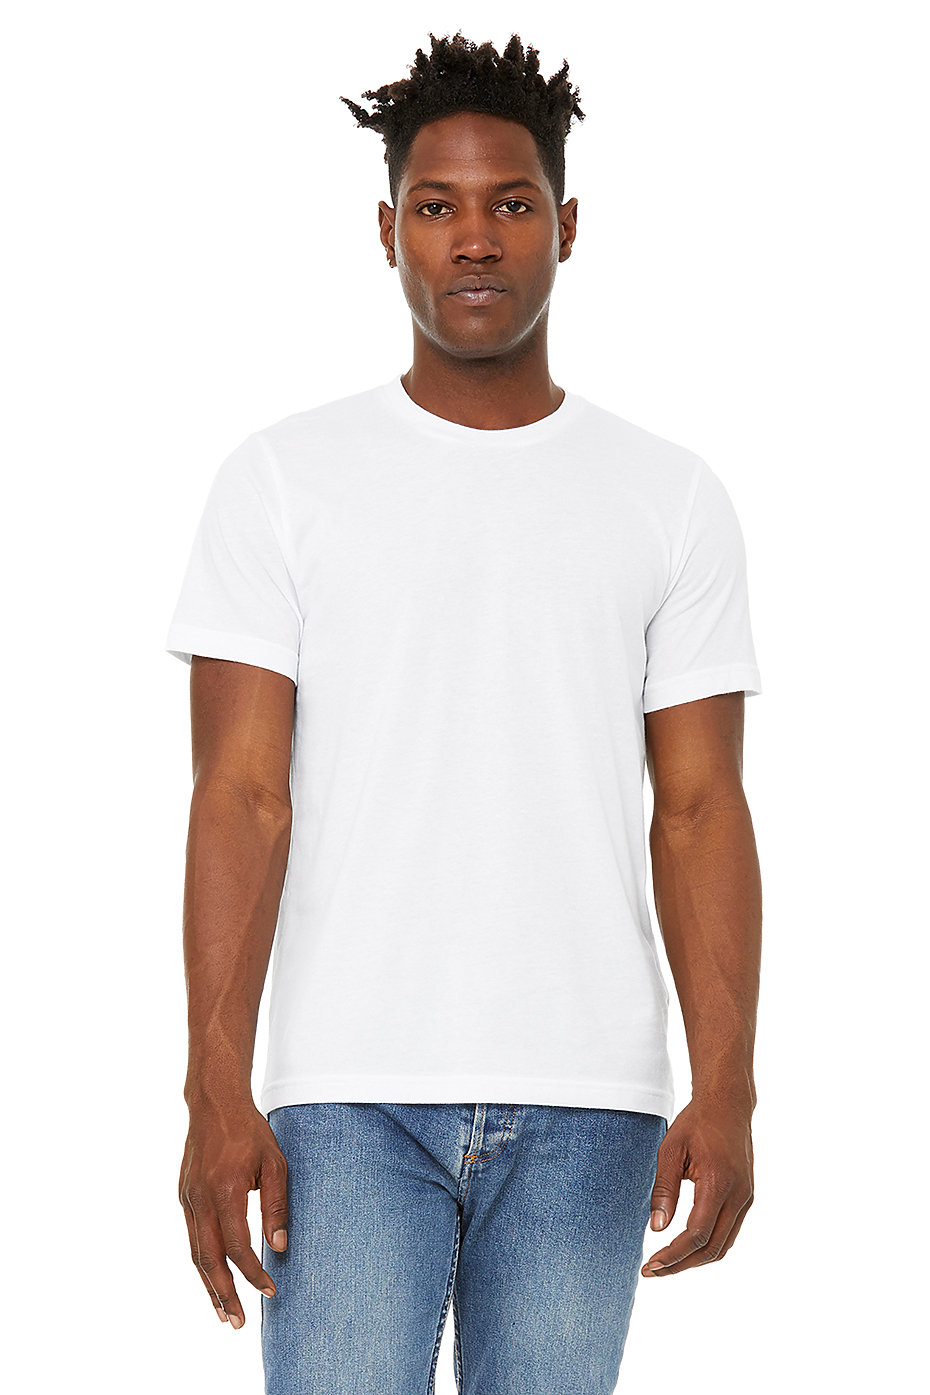 Unisex Sueded Tee | Wholesale Blank Shirts | Bulk, Plain T Shirts |